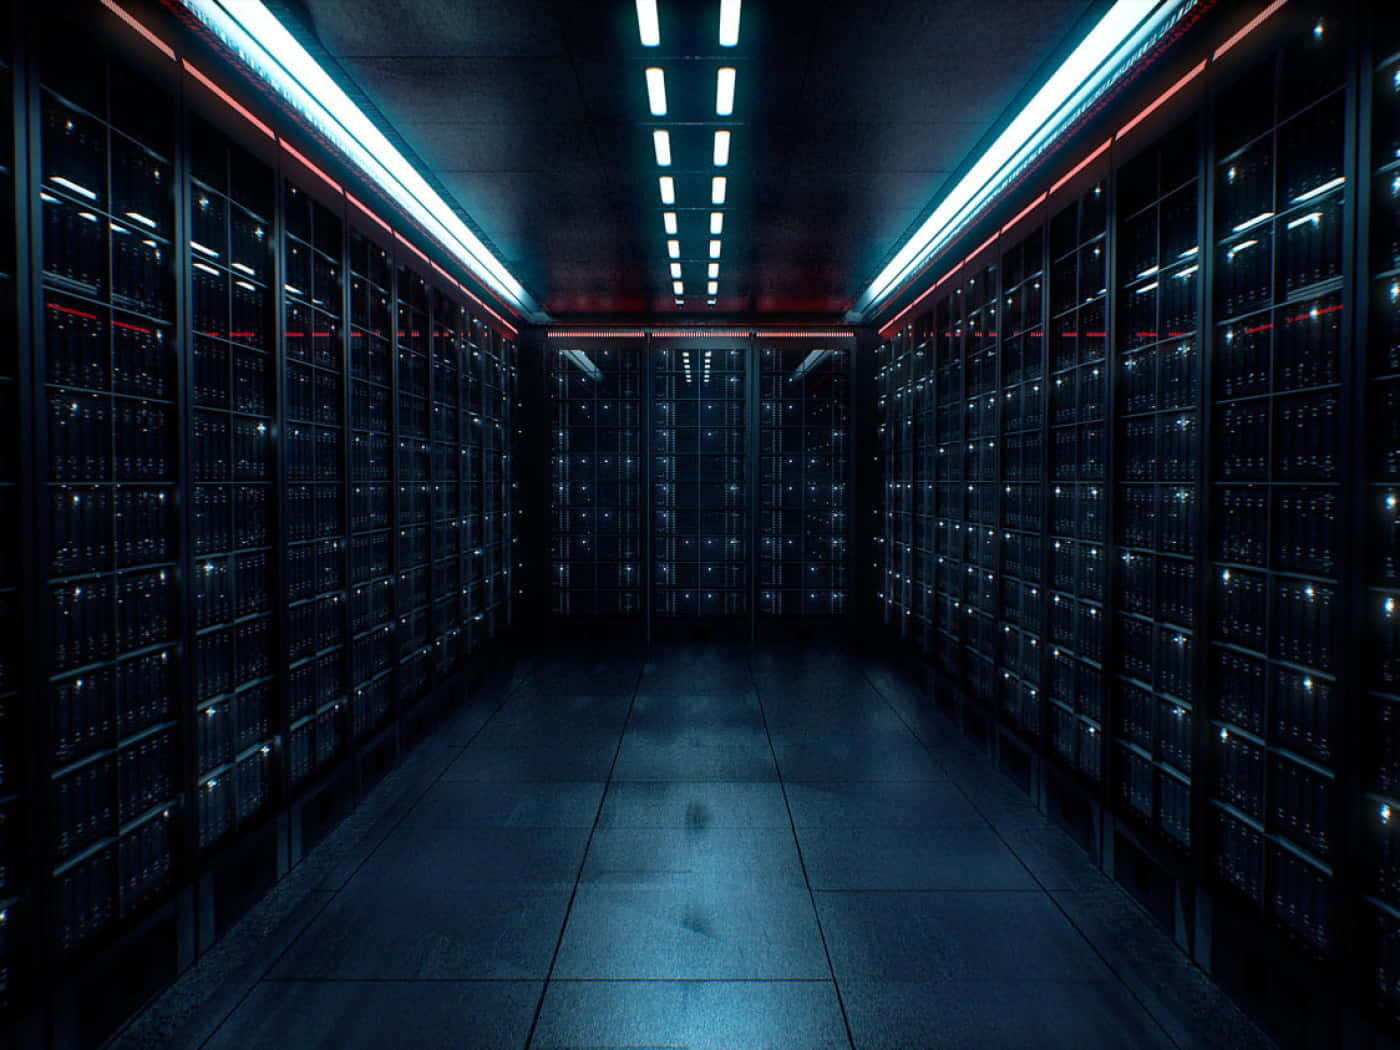 A Dark Hallway With Many Servers